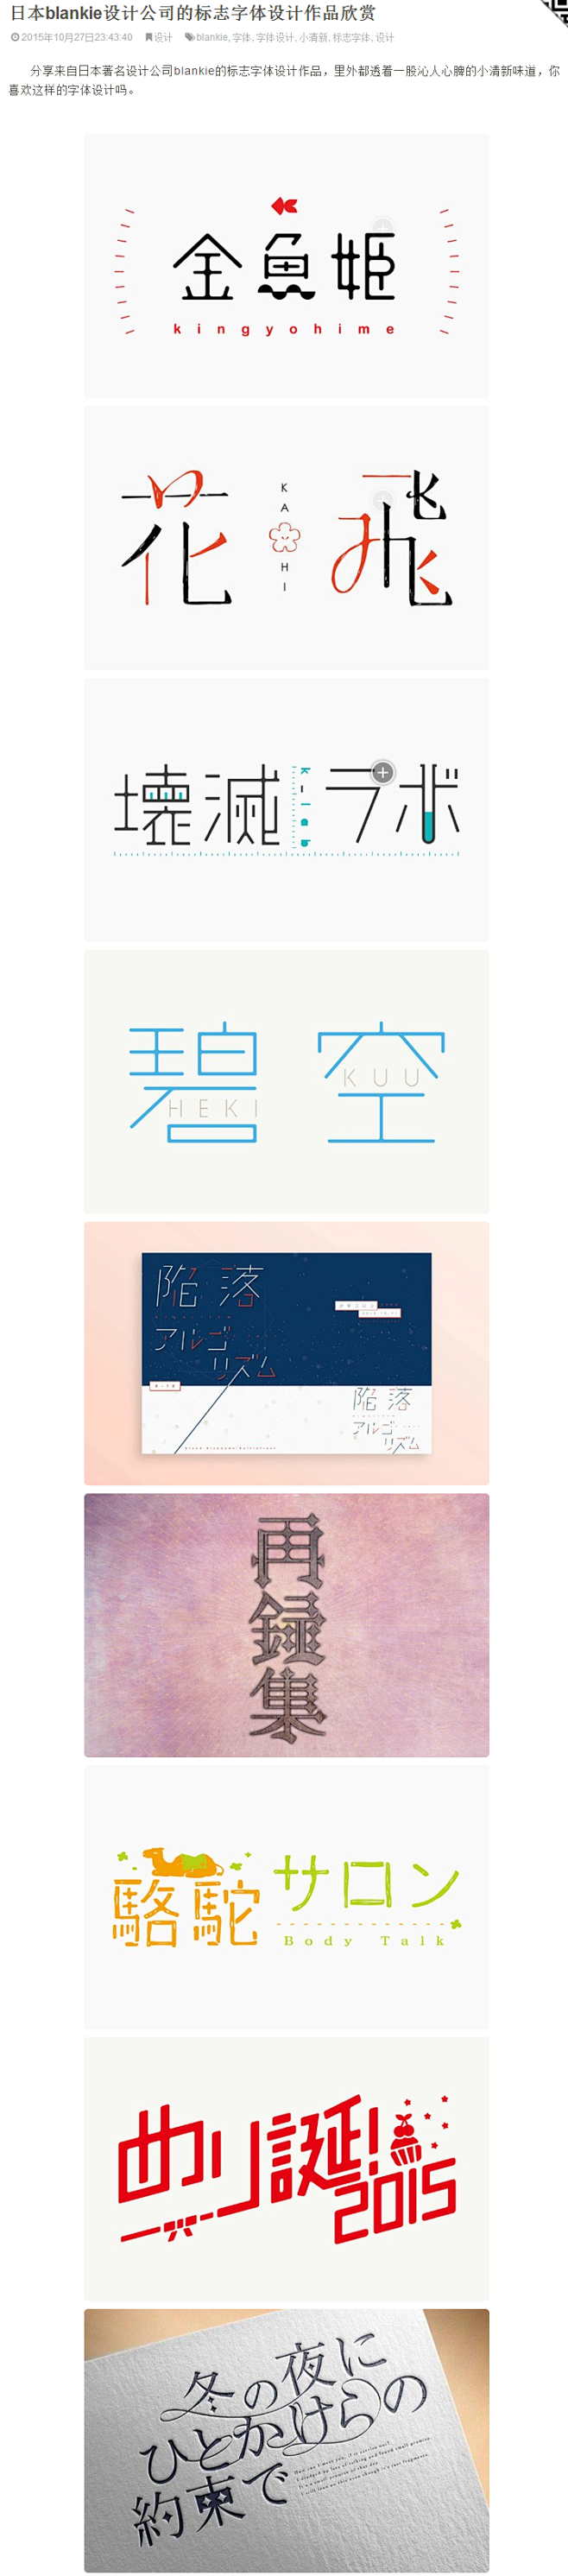 日本blankie设计公司的标志字体设计...